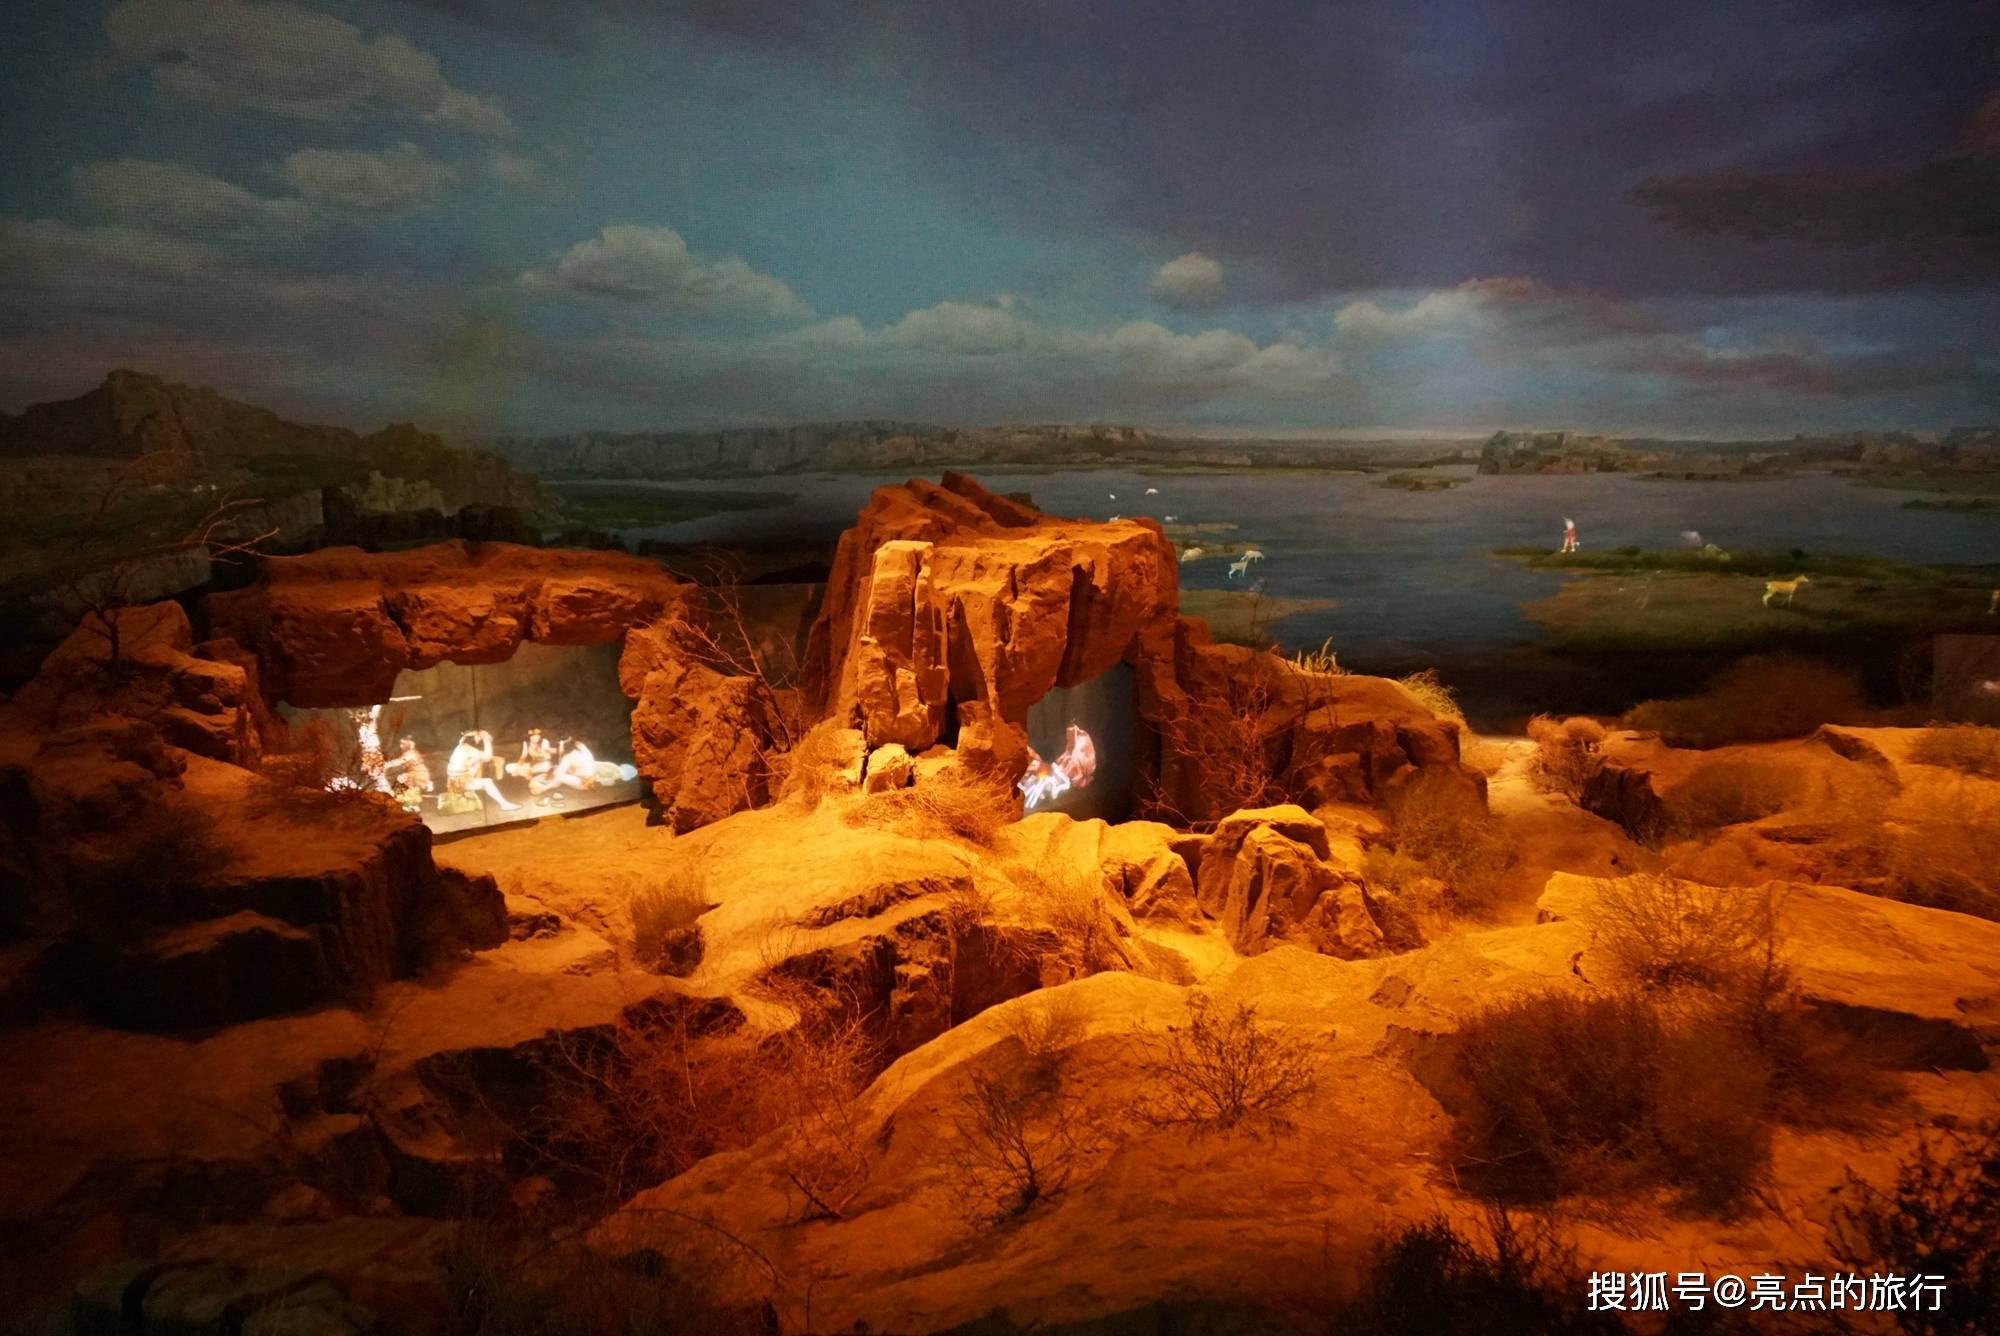 水洞沟,黄河地区的旧石器时代遗址,中国史前考古发祥地